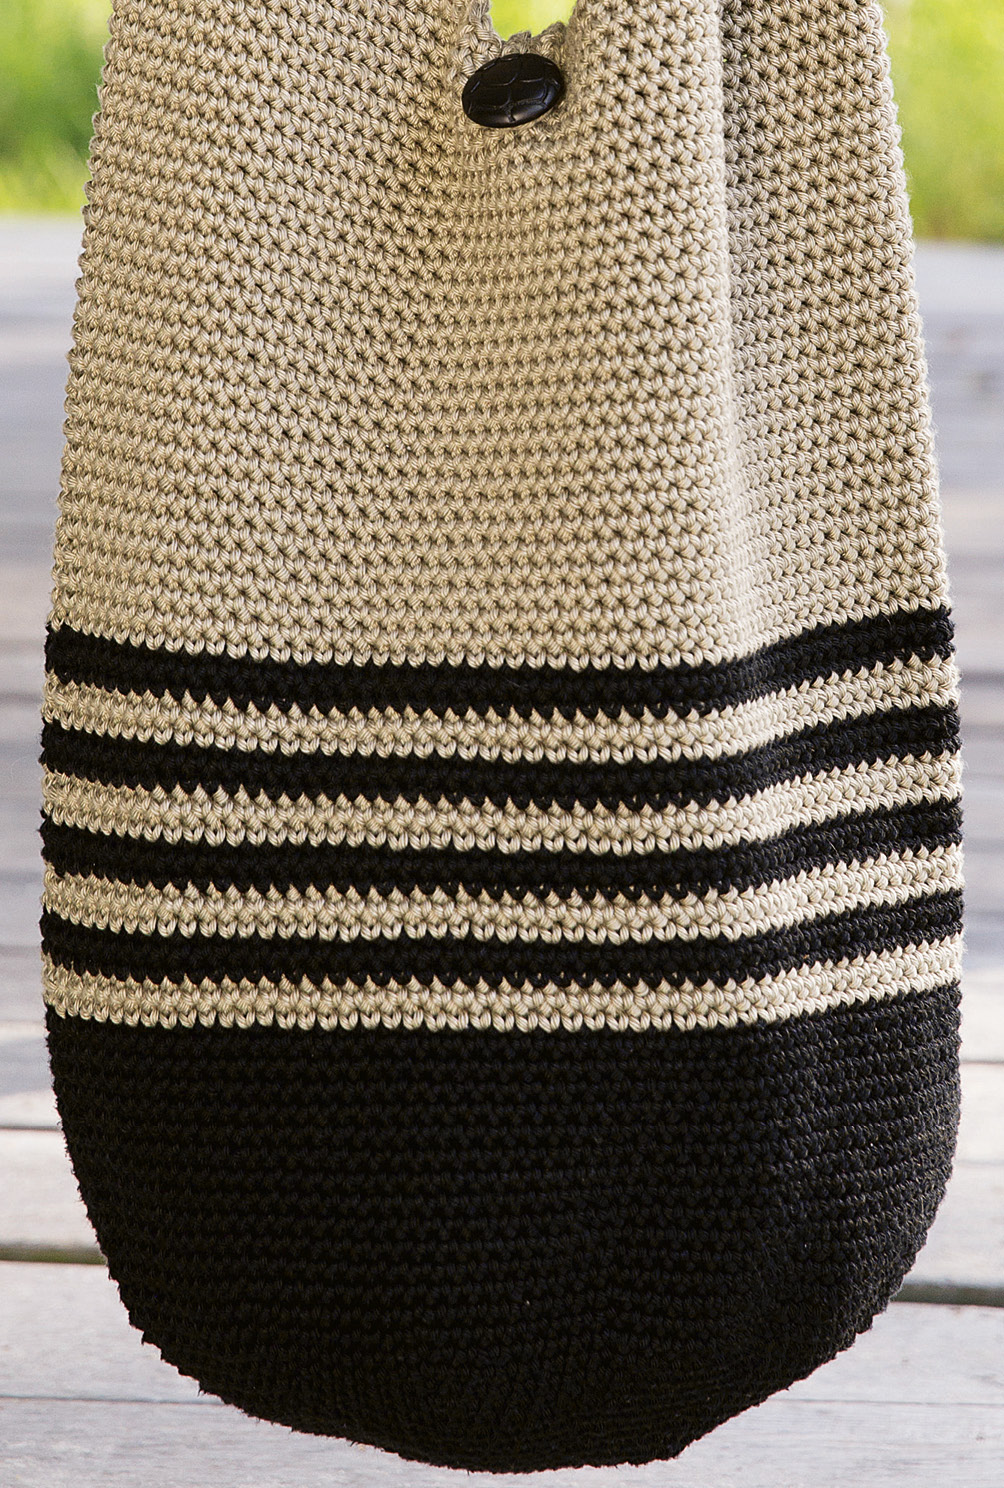 Stabile Beuteltasche aus Baumwolle in festem Maschenmuster in Beige/ Schwarz